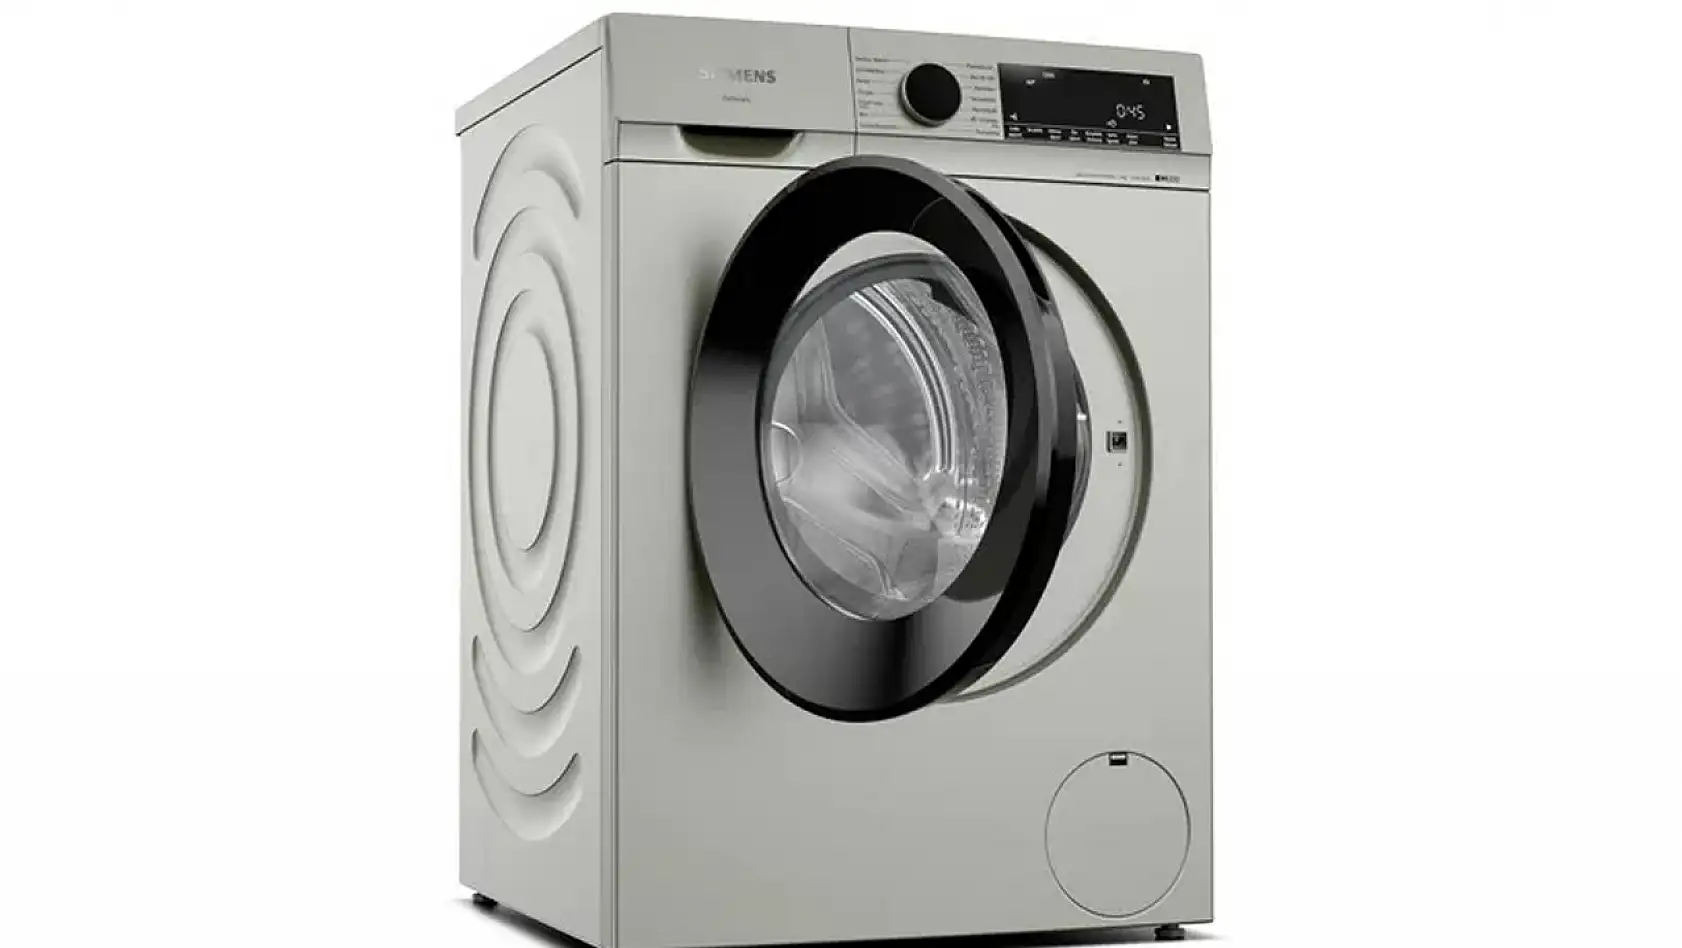 Çamaşır Makinelerinin Kapakları Neden Camdan?